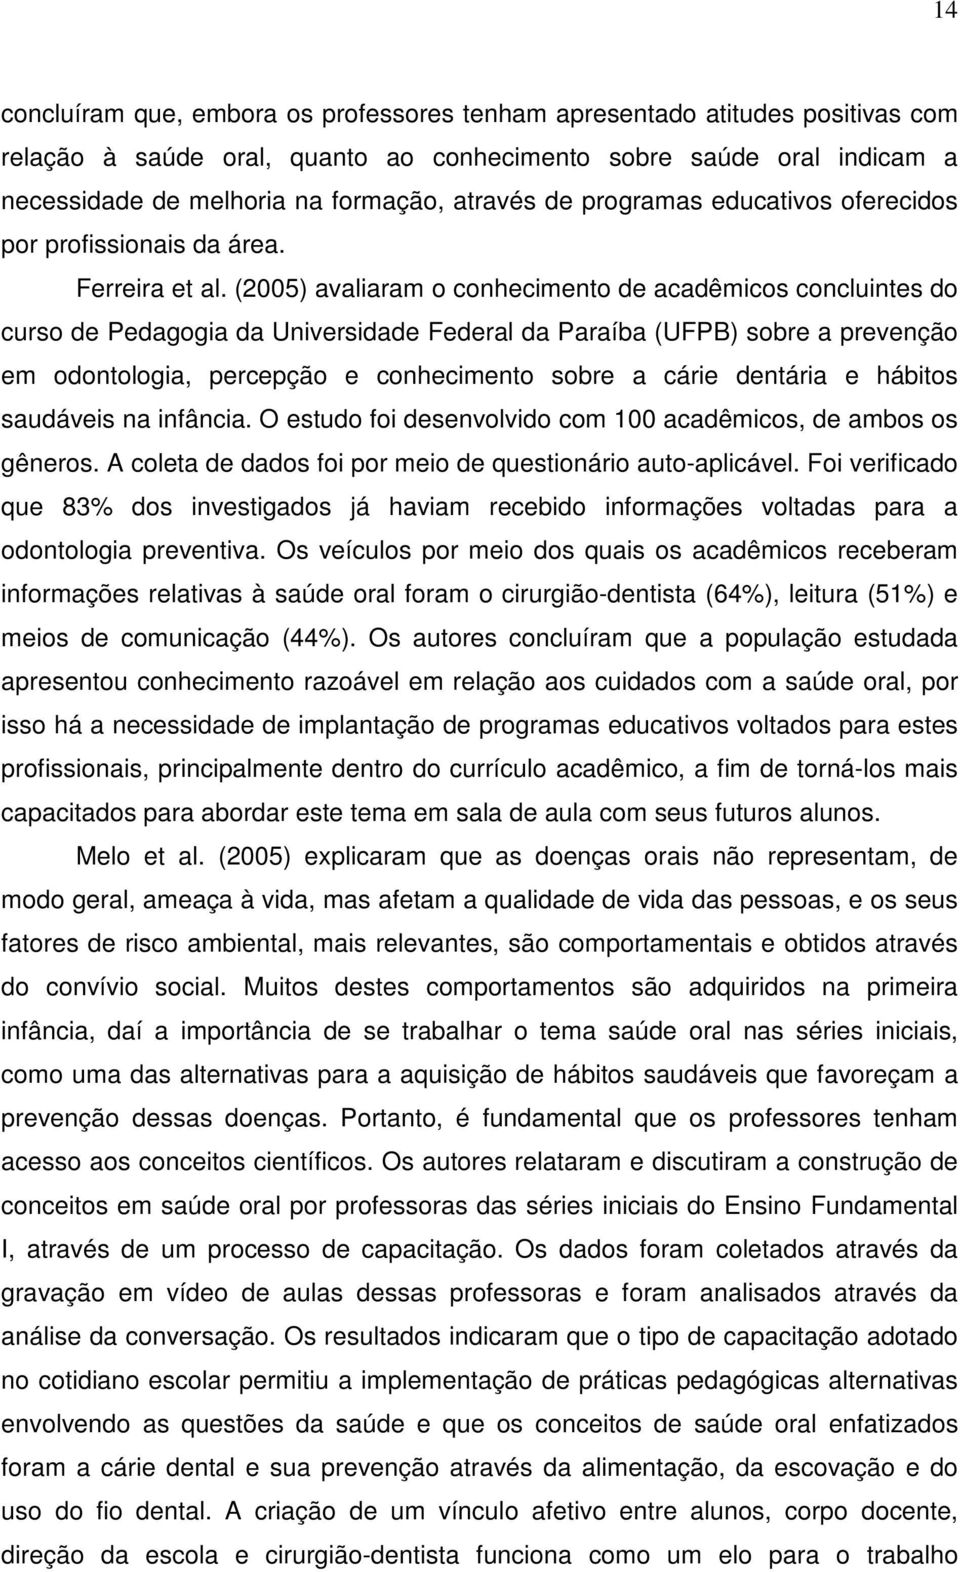 (2005) avaliaram o conhecimento de acadêmicos concluintes do curso de Pedagogia da Universidade Federal da Paraíba (UFPB) sobre a prevenção em odontologia, percepção e conhecimento sobre a cárie